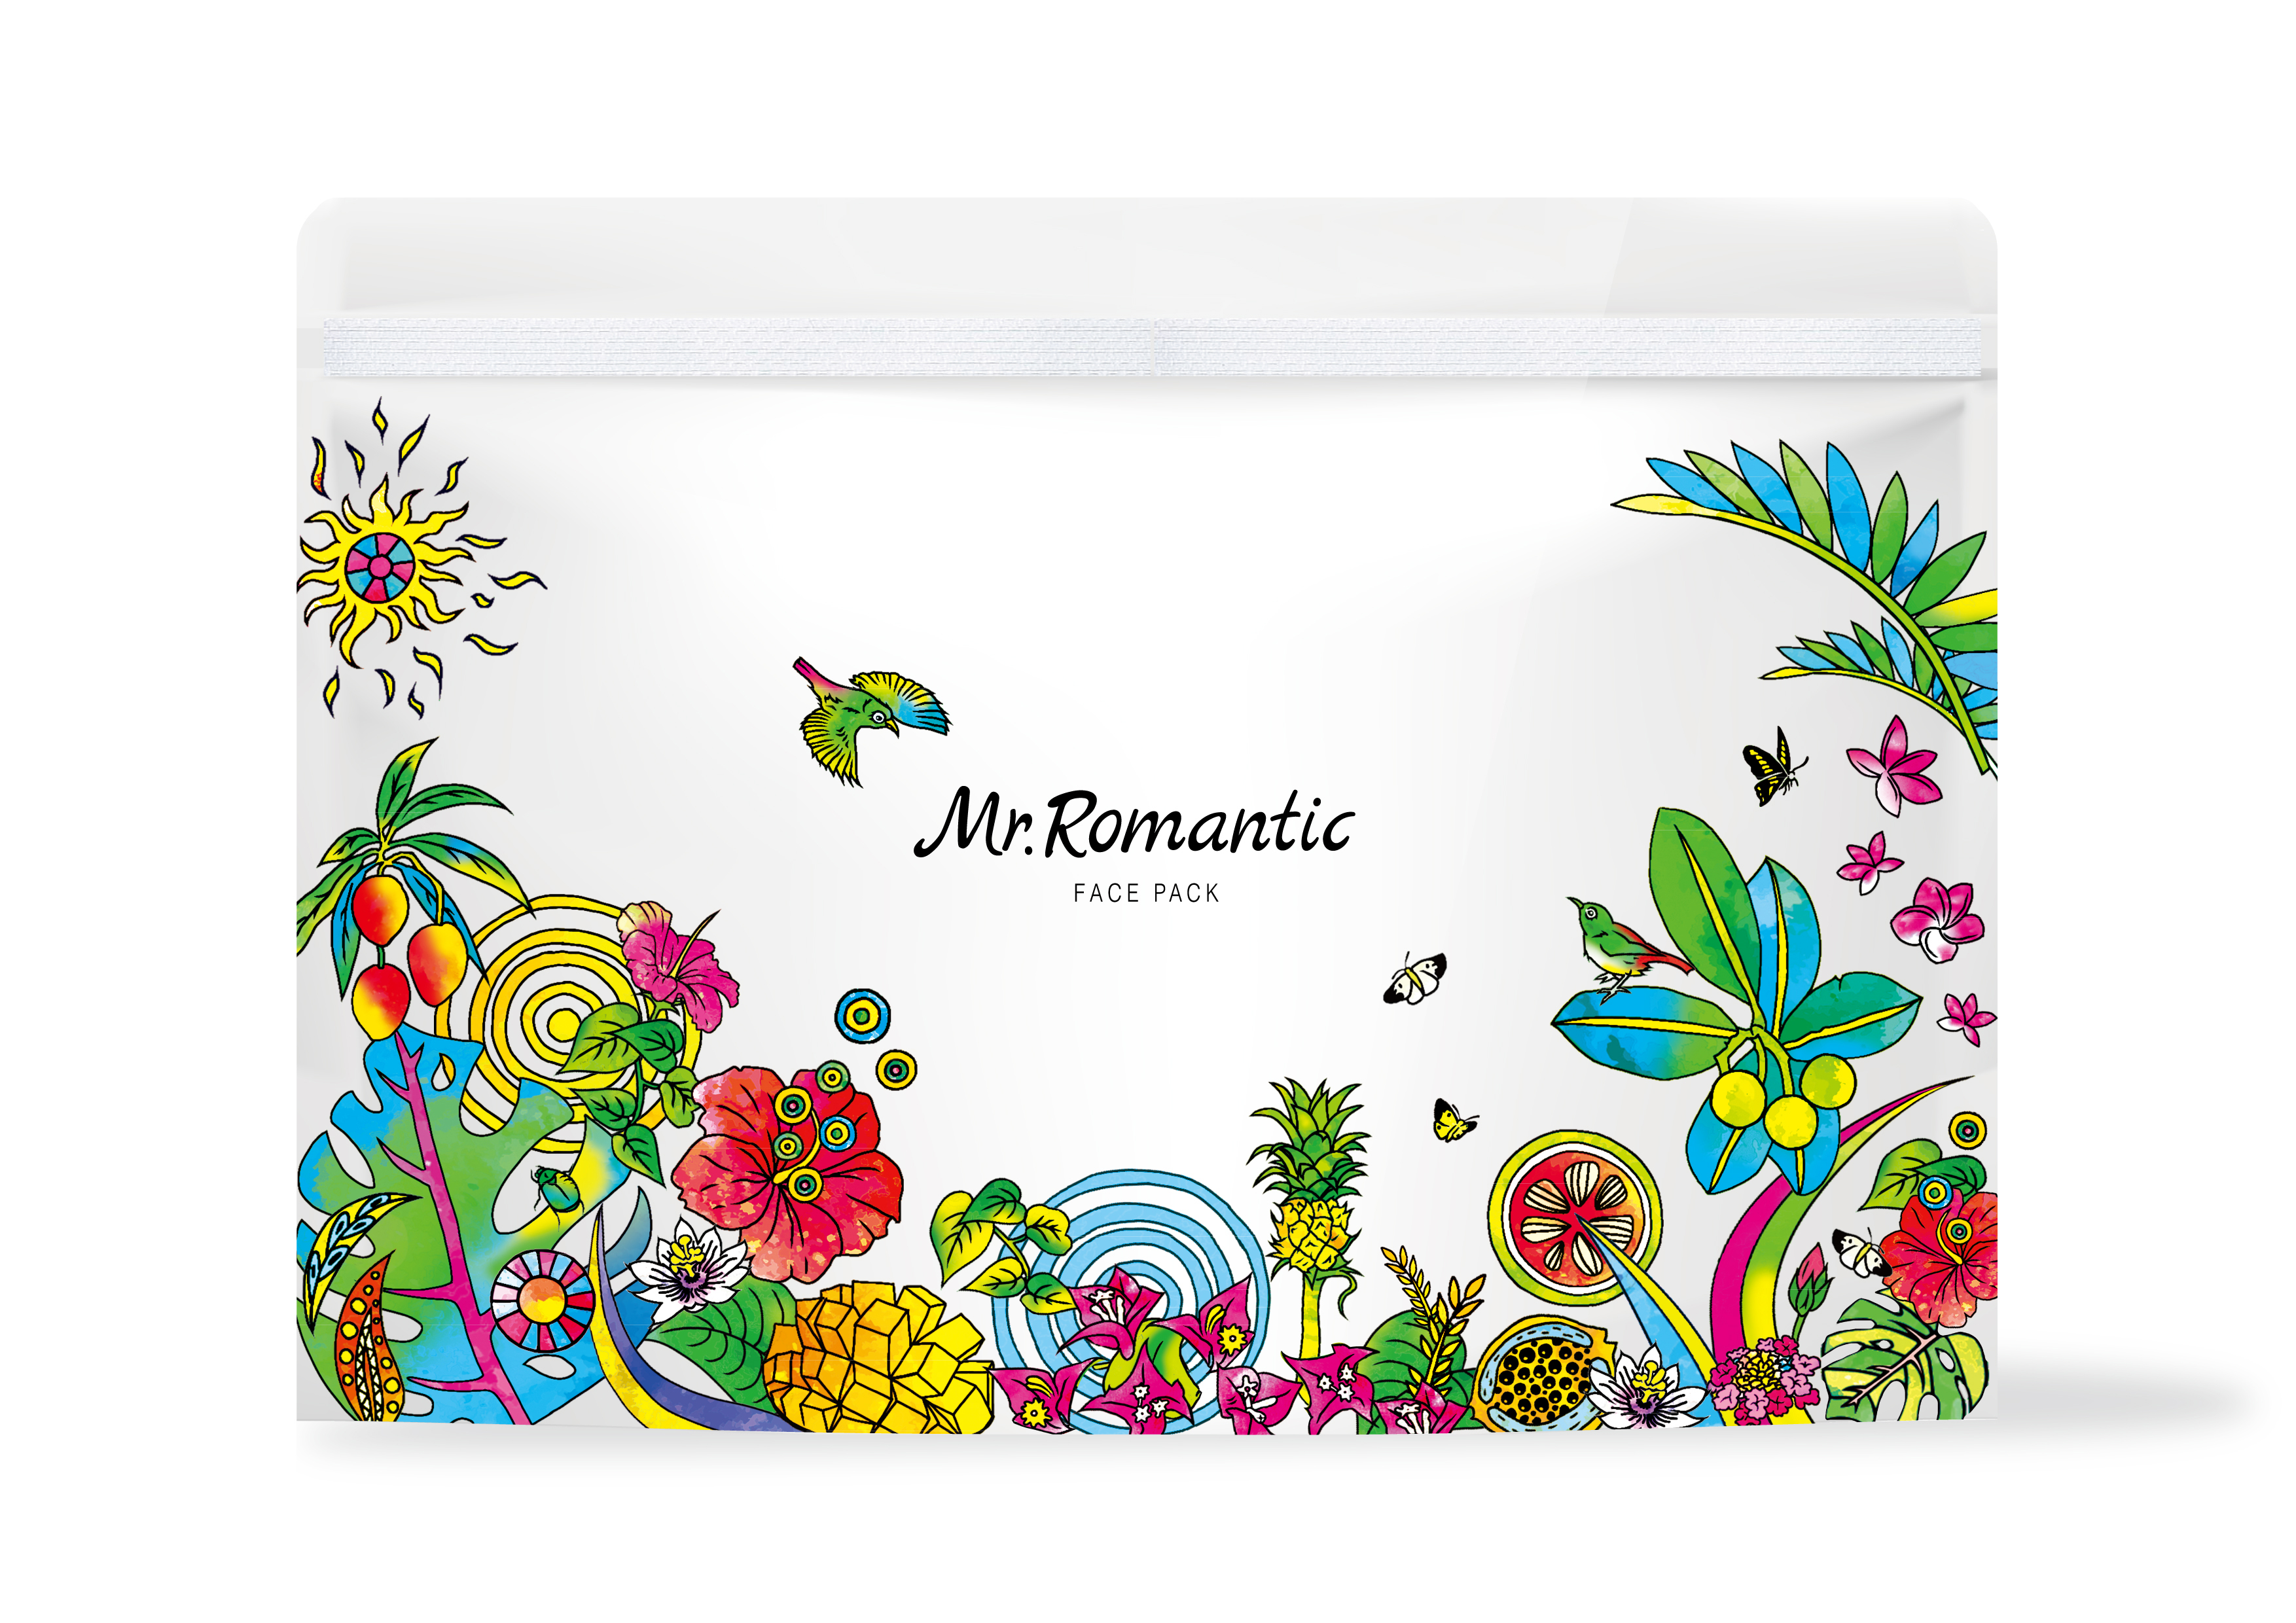 美容成分たっぷりタマヌオイル配合「Mr.Romanticフェイスマスク＆Natural Soap」